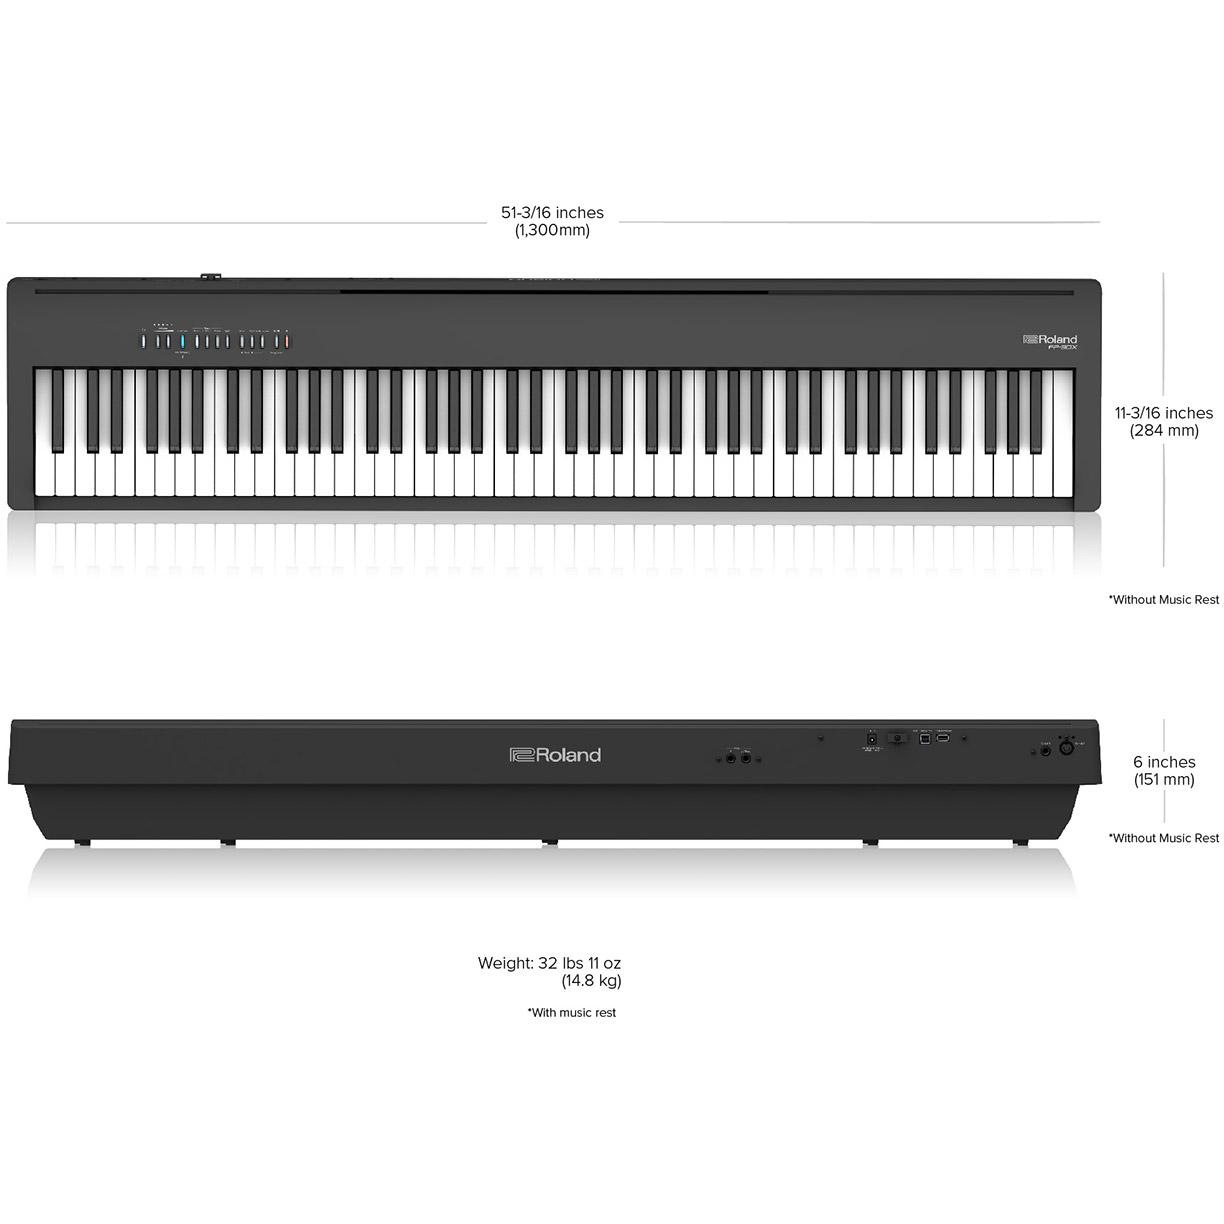 ROLAND FP-30X-BK - цифровое фортепиано, 88 кл. PHA-4 Standard, 56 тембров, 256 полиф., (цвет чёрный)